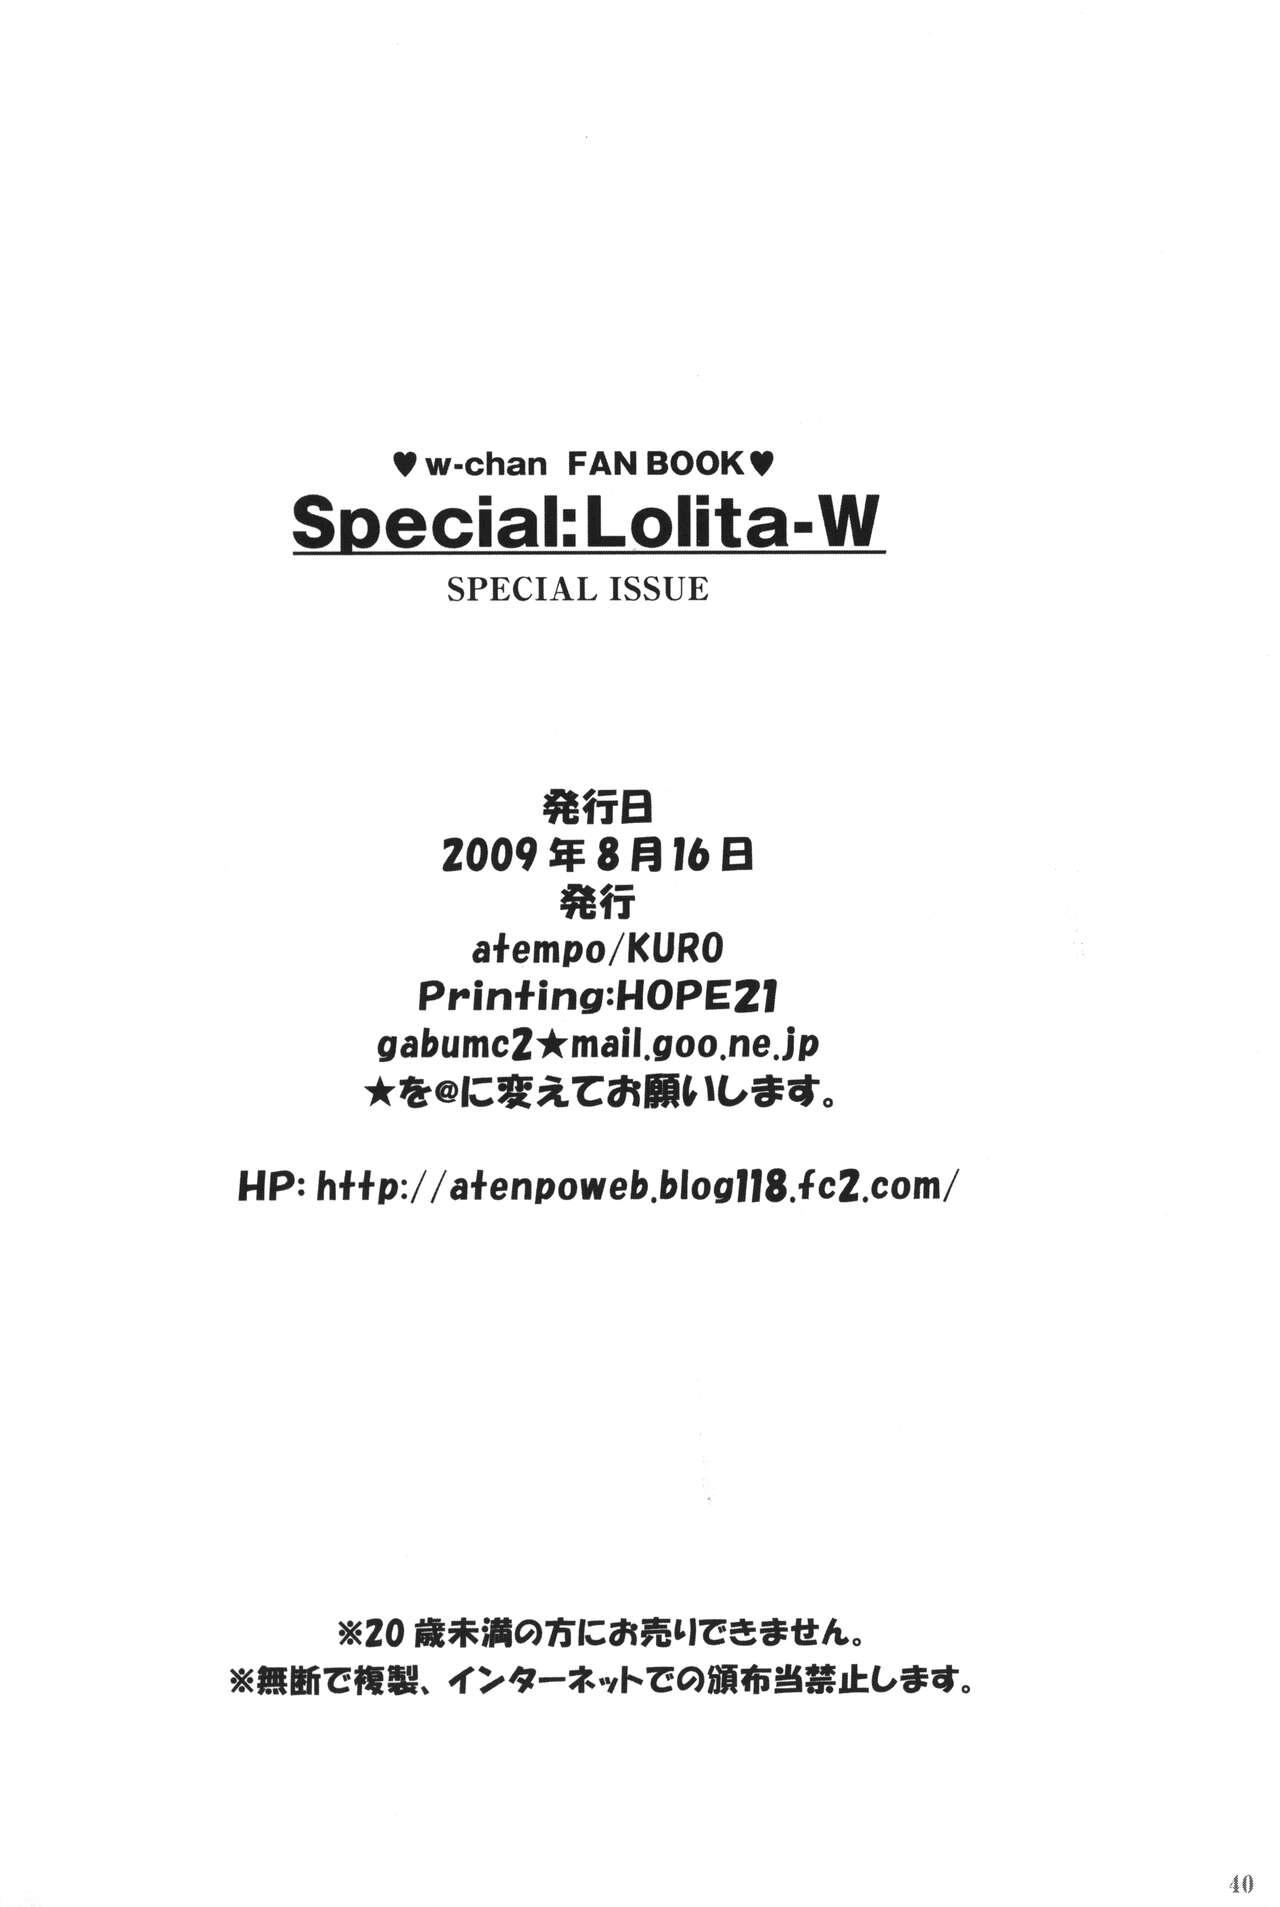 Special:Lolita-W 38